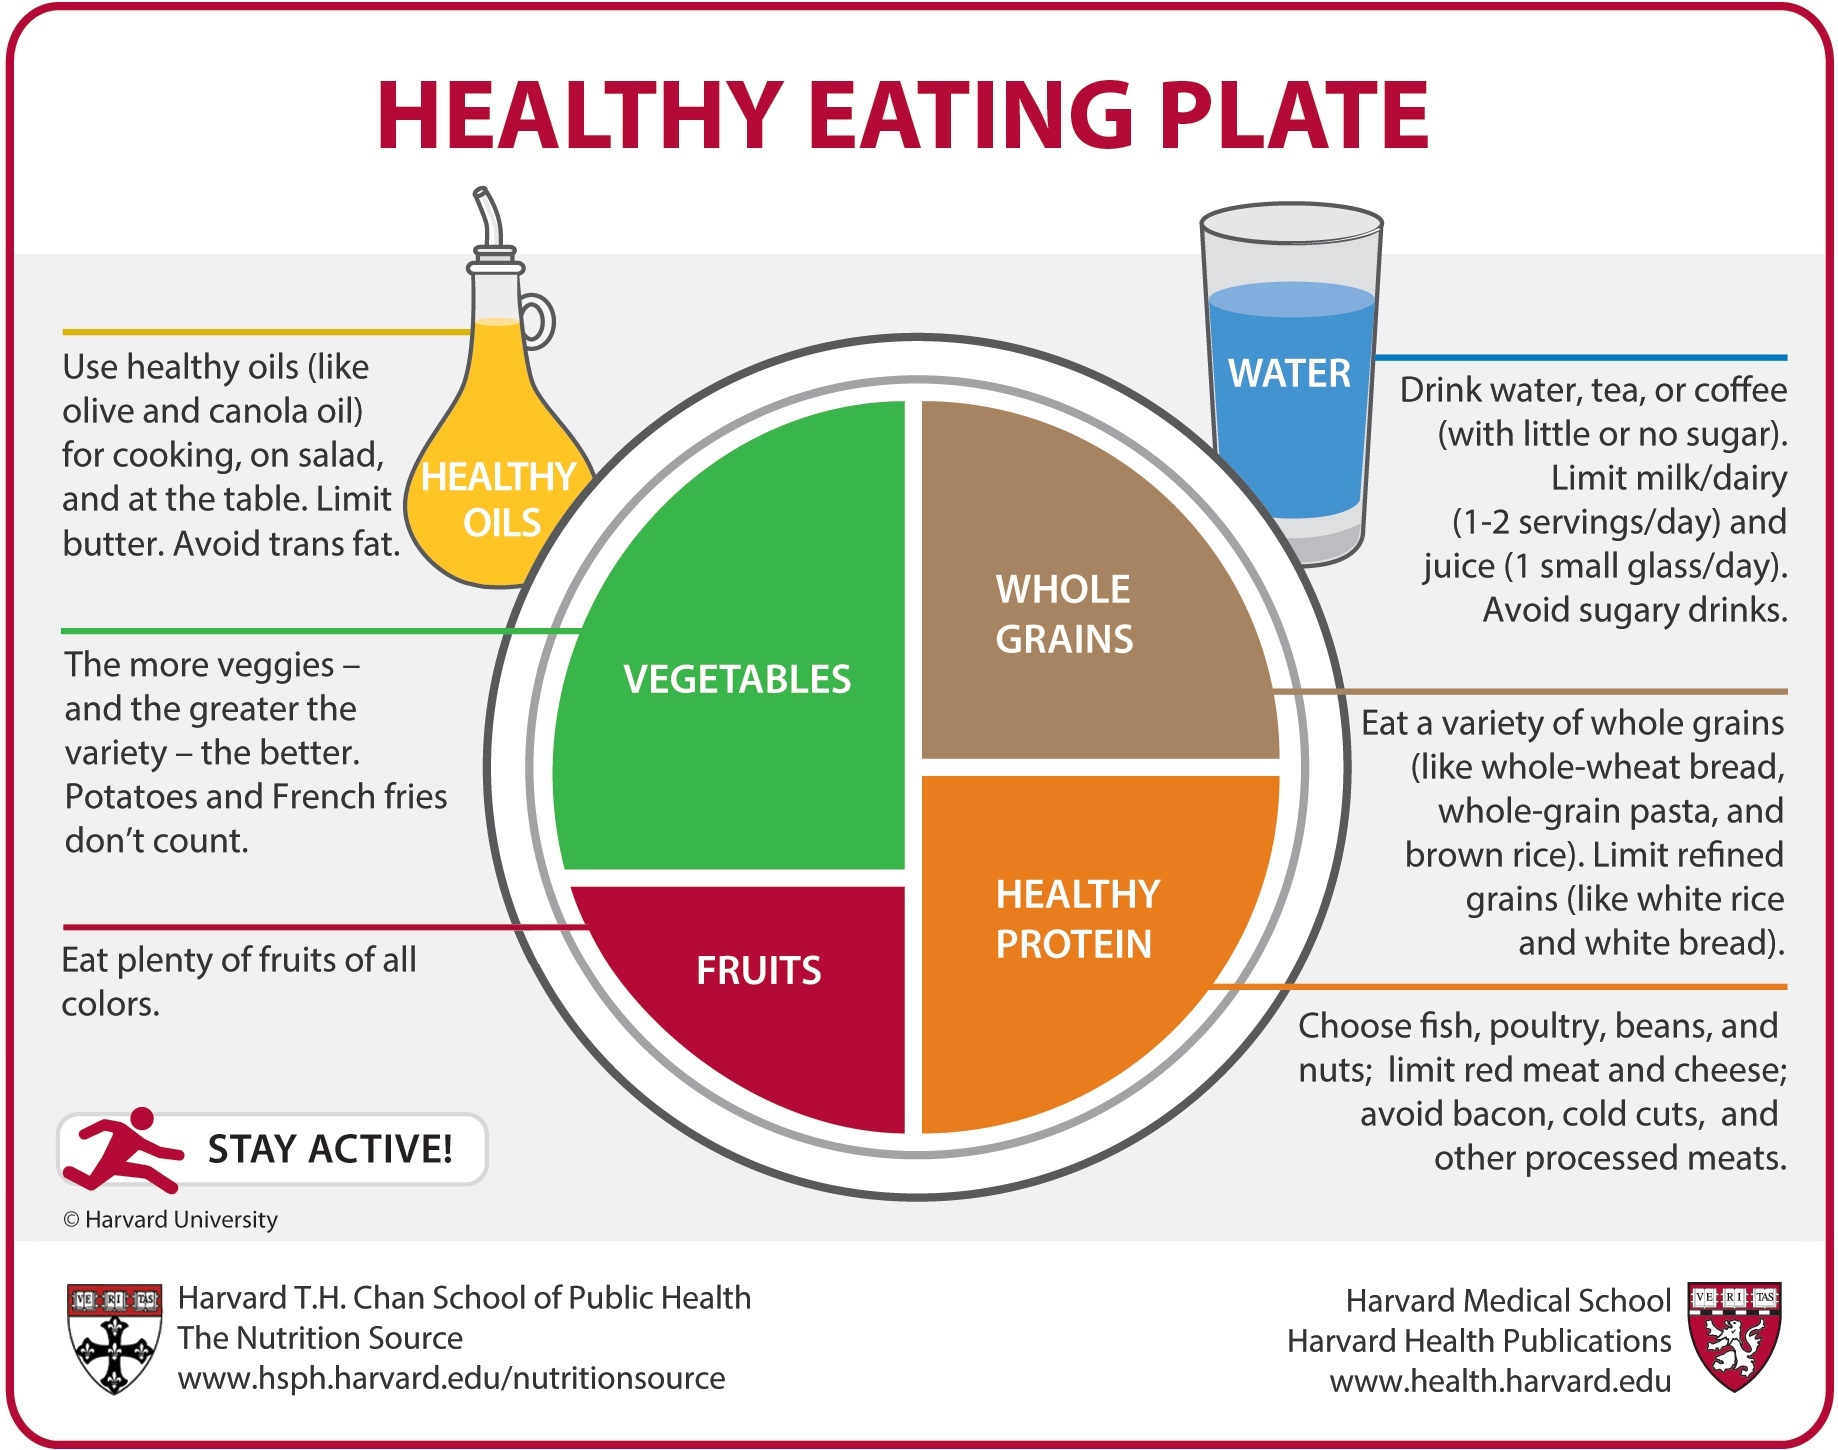 image Healthy Eating Plate Harvard Medical School